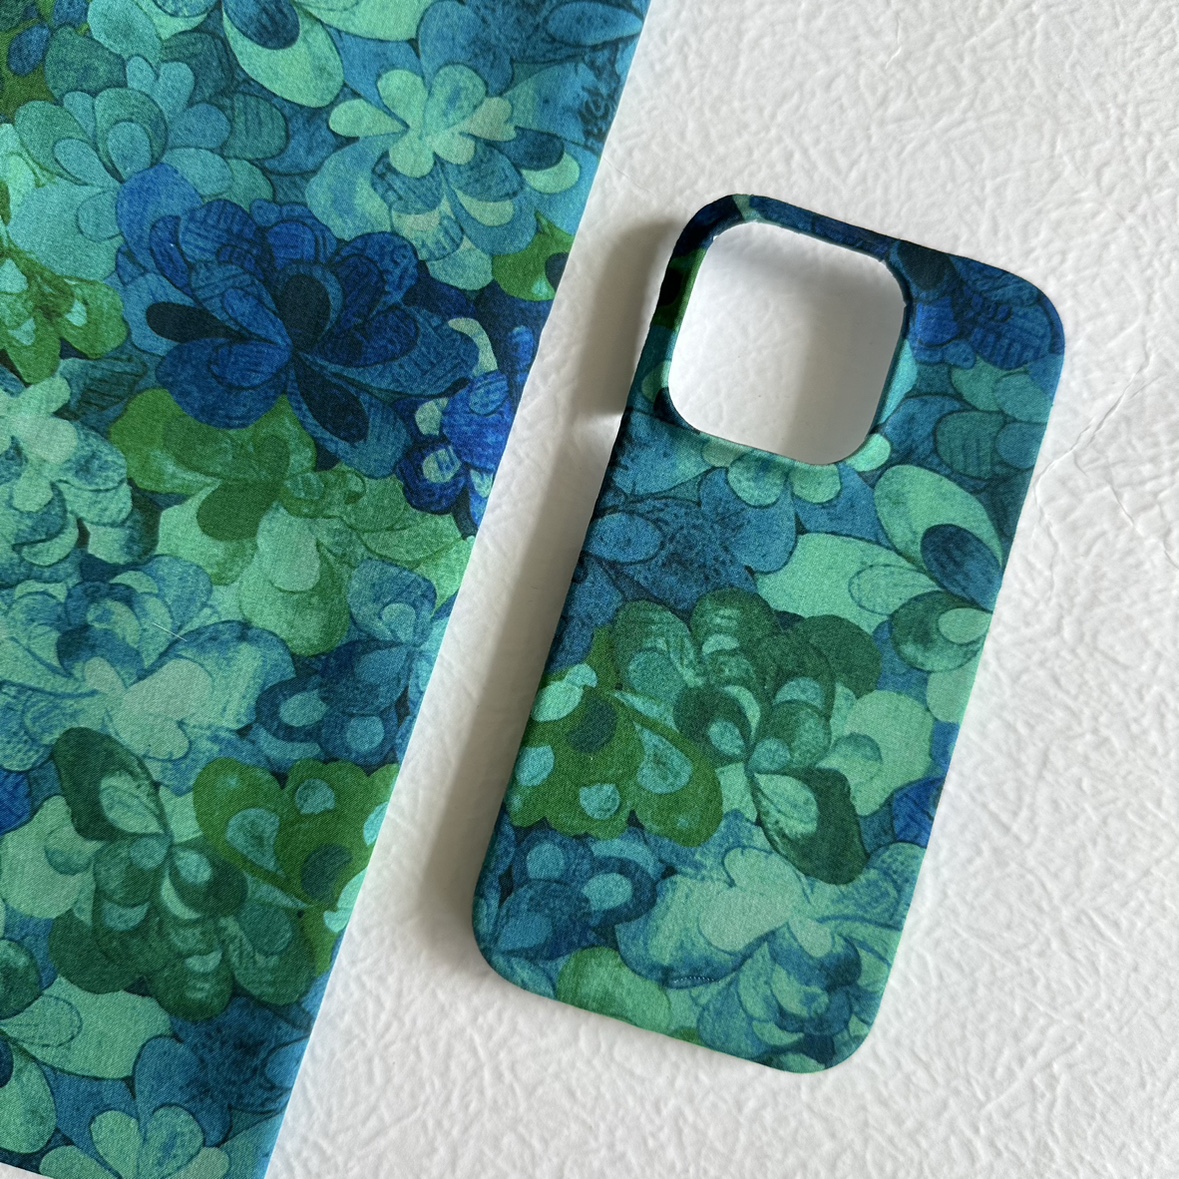 波光粼粼夏天的蓝绿色布艺手机壳iPhone121314Promax安卓手工制作